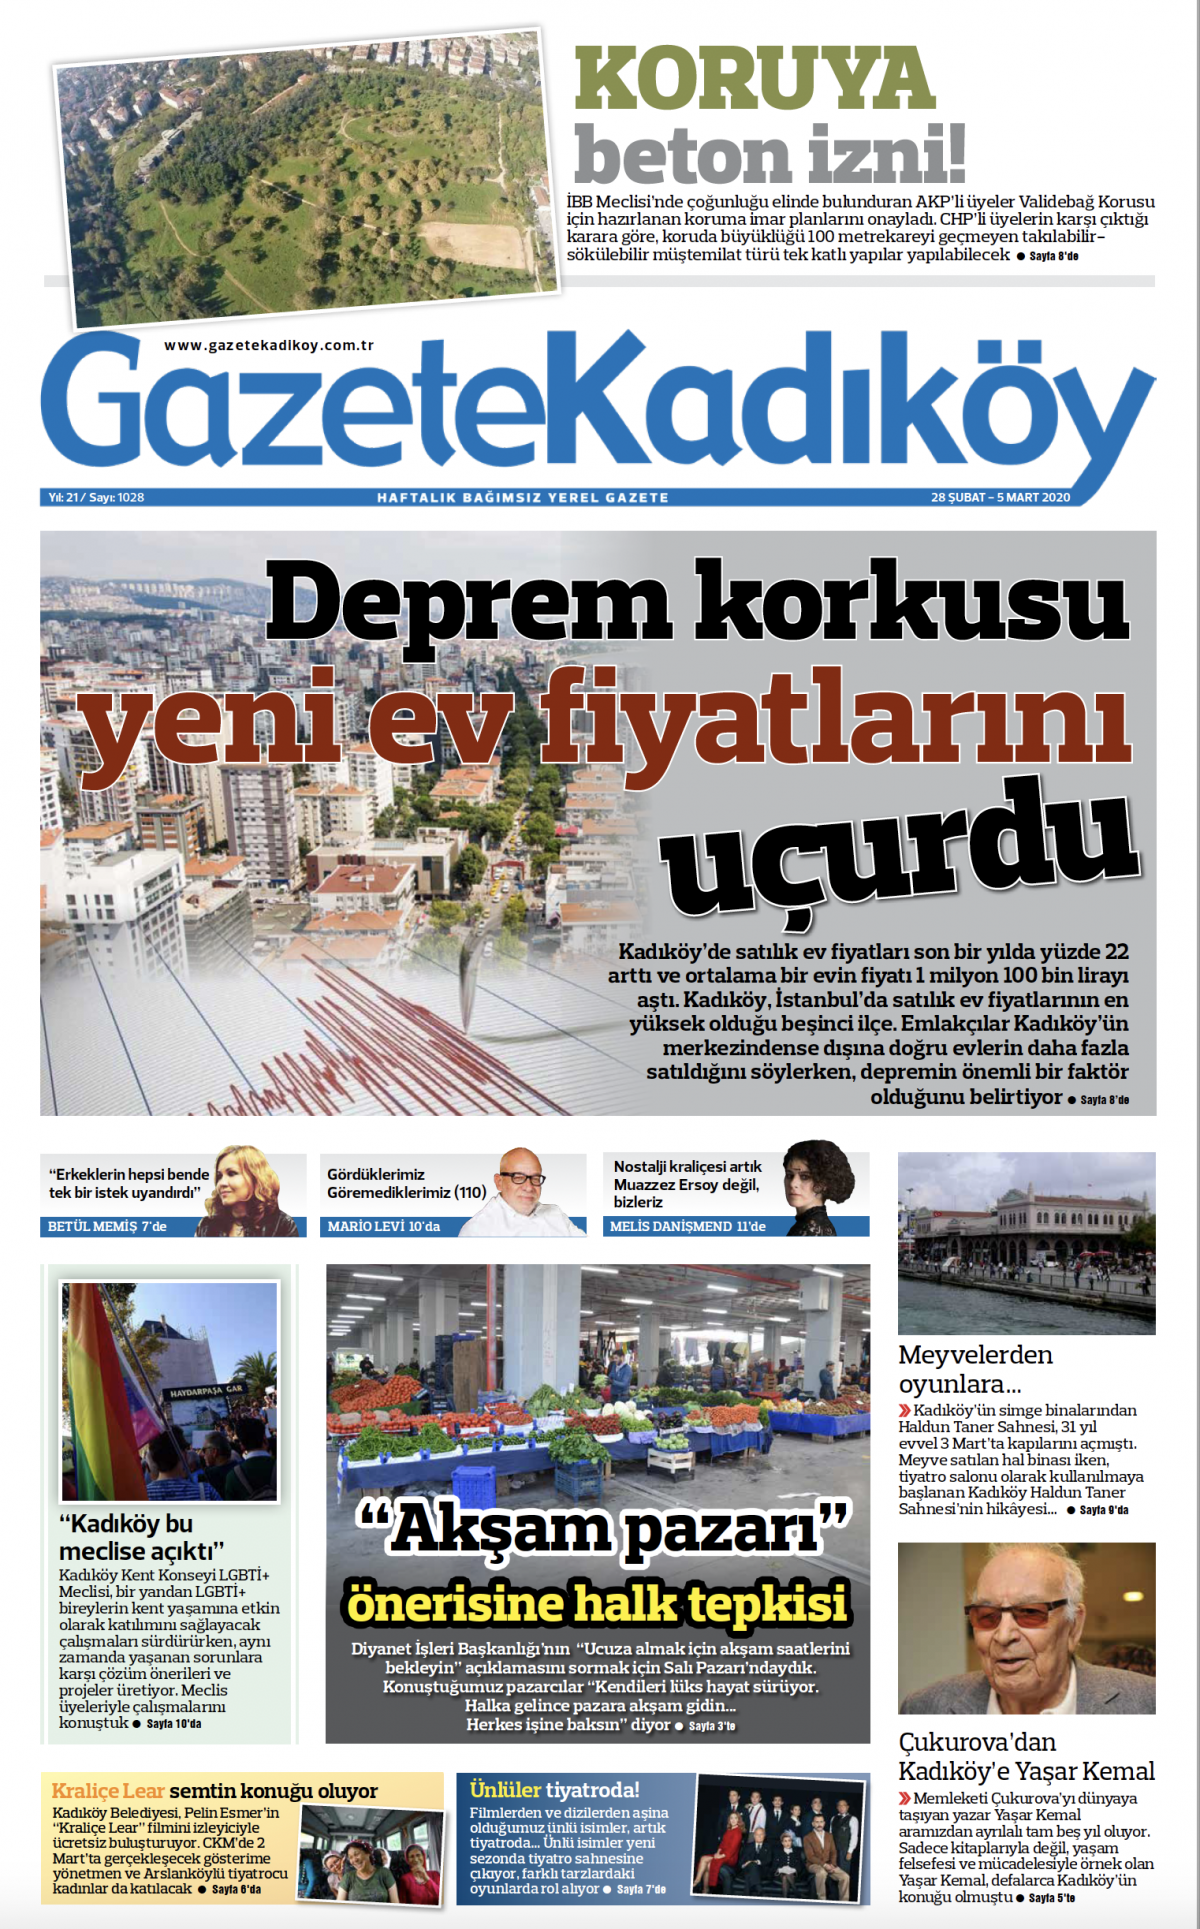 Gazete Kadıköy - 1028. sayı